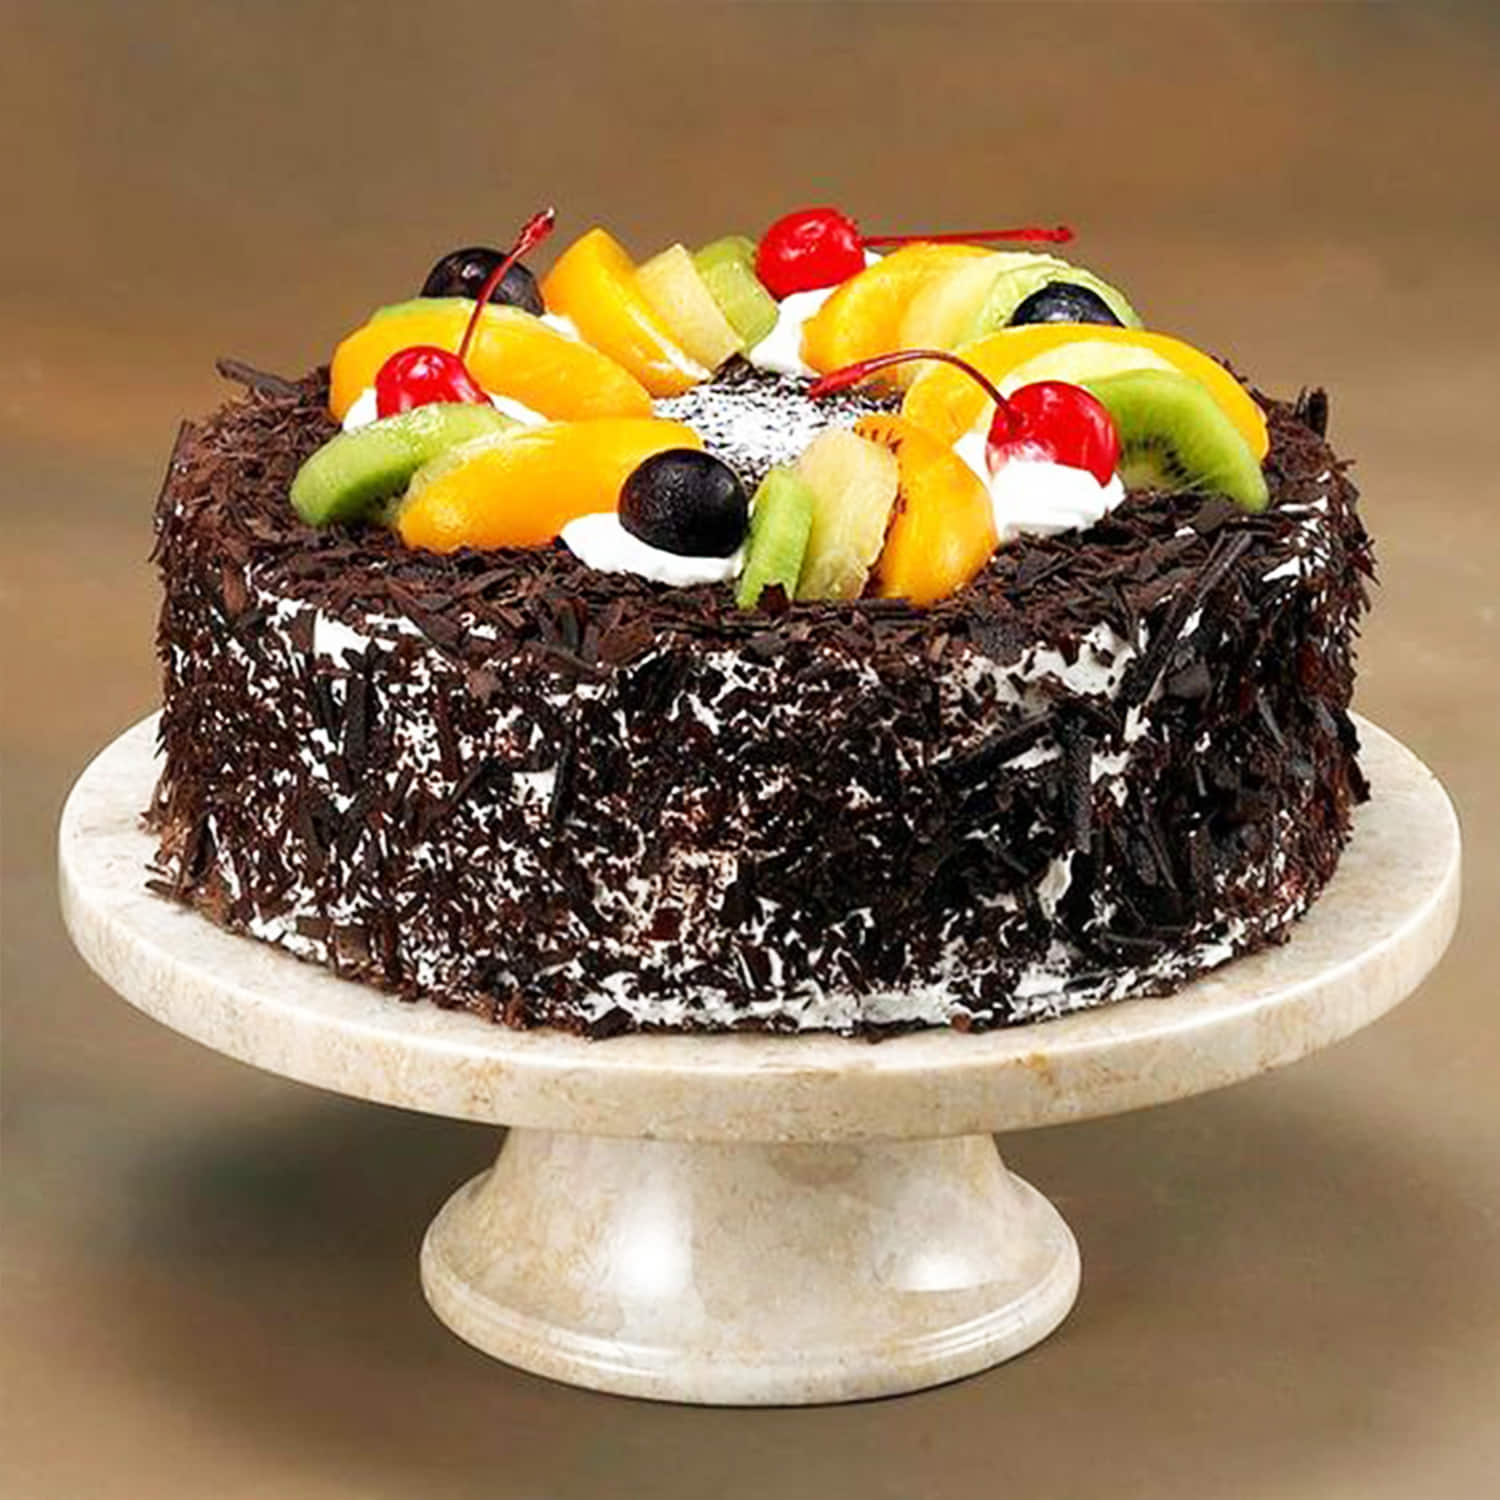 Chocolate and fruit wedding cake - Decorated Cake by - CakesDecor